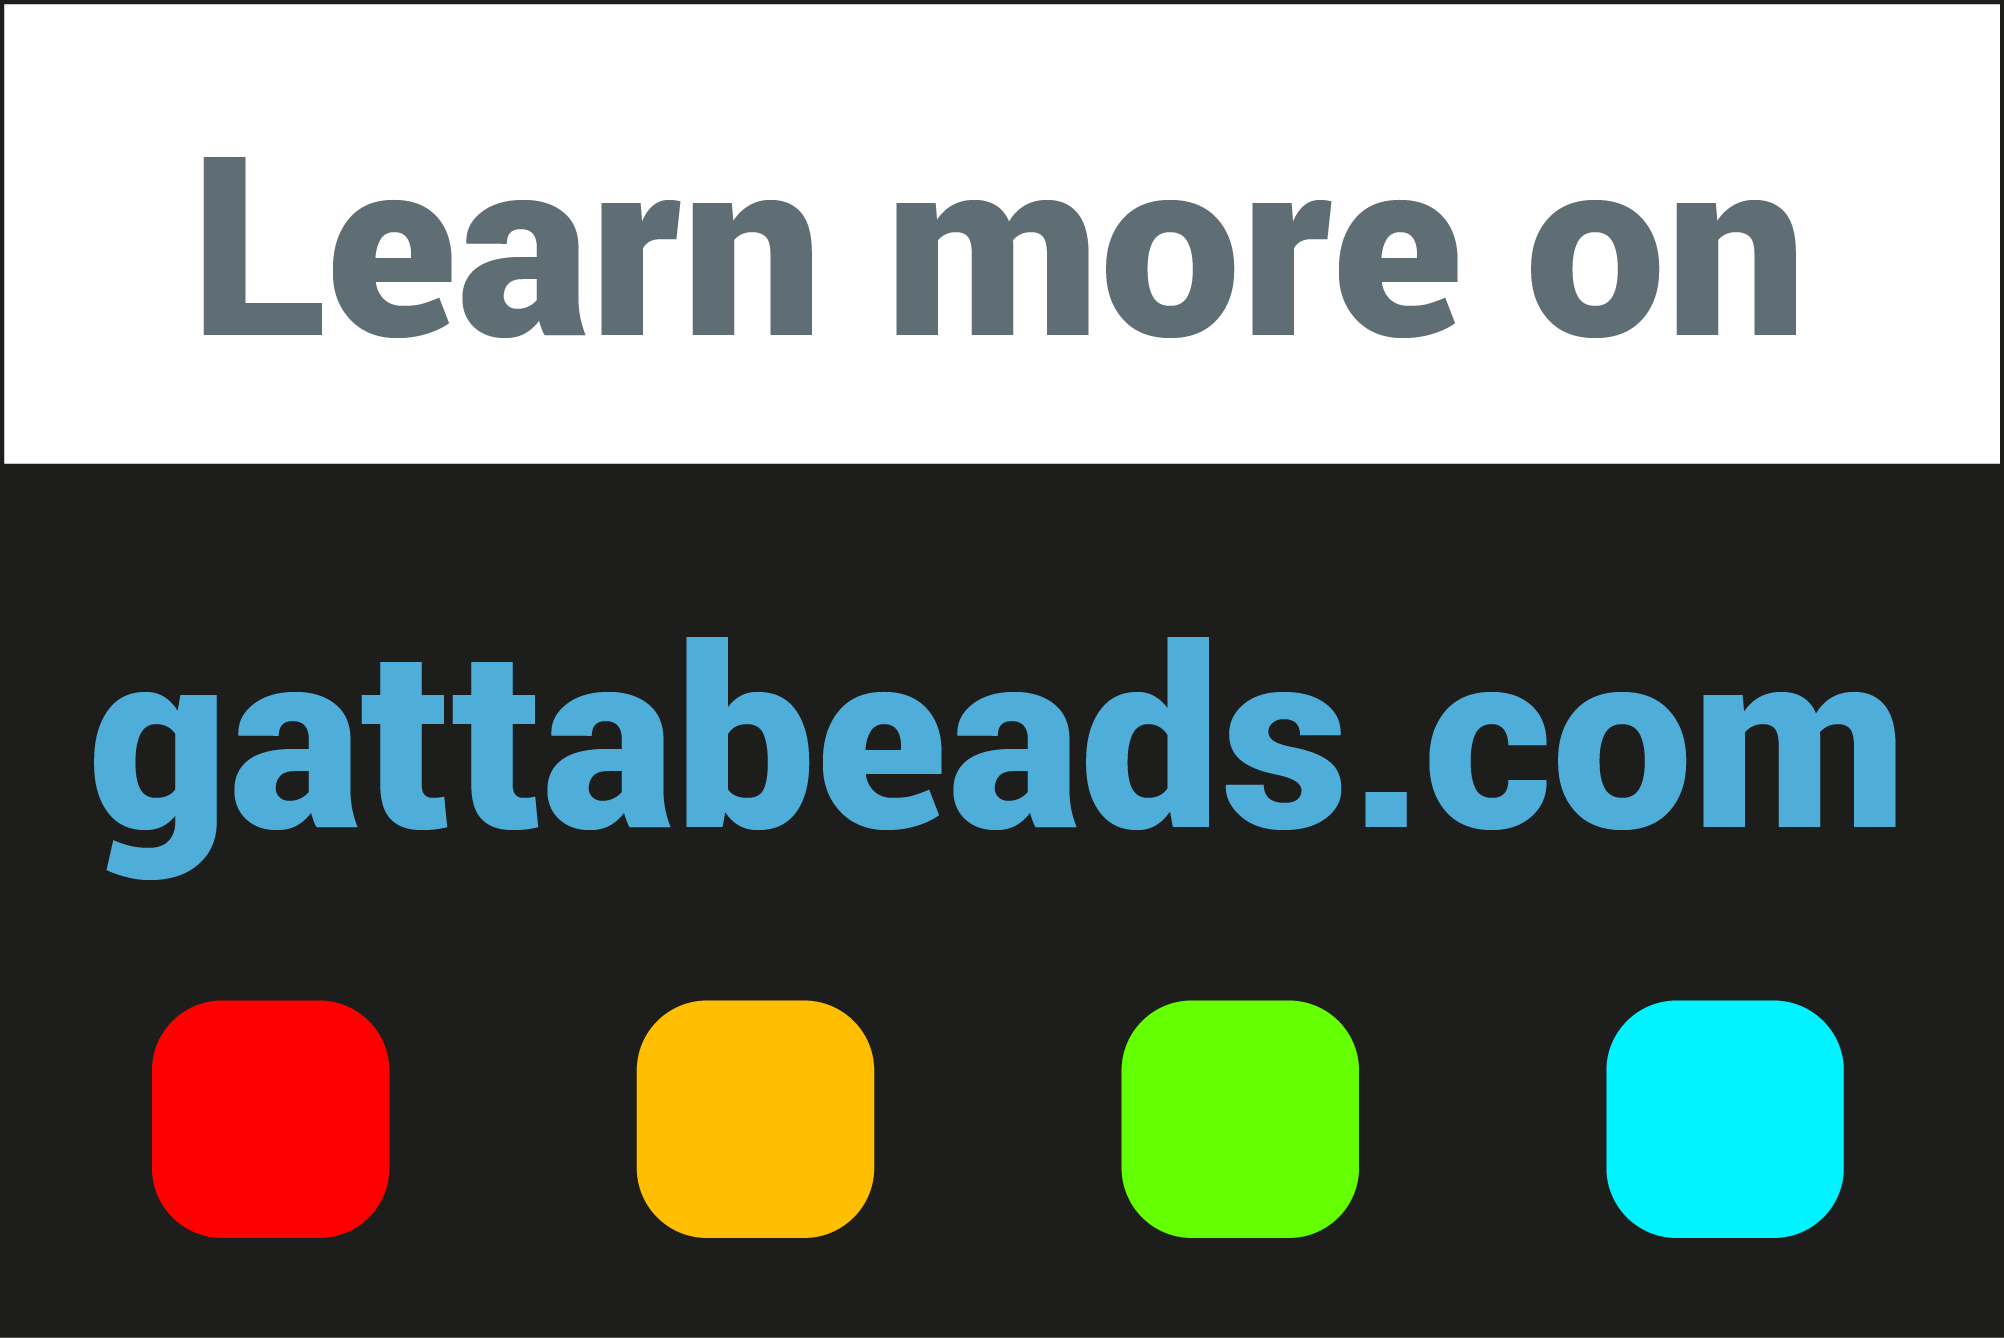 gattabeads.com_link.png